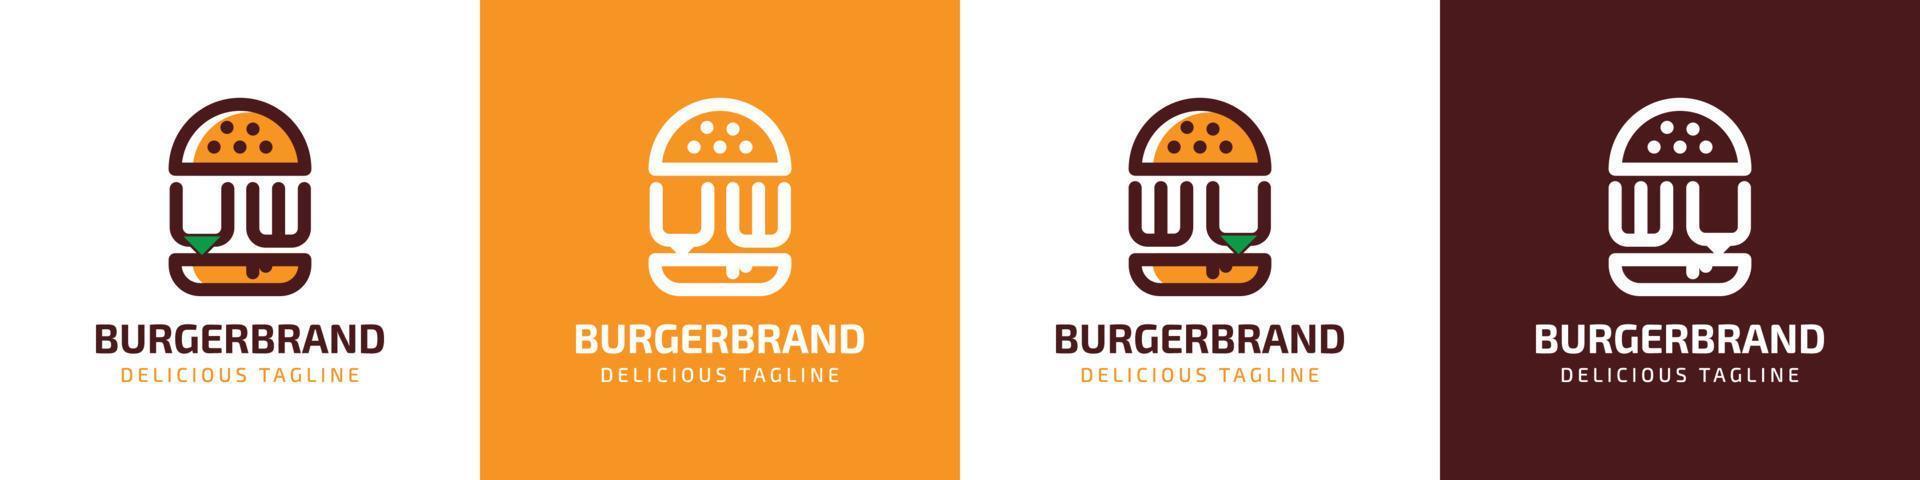 brev din och wu burger logotyp, lämplig för några företag relaterad till burger med din eller wu initialer. vektor